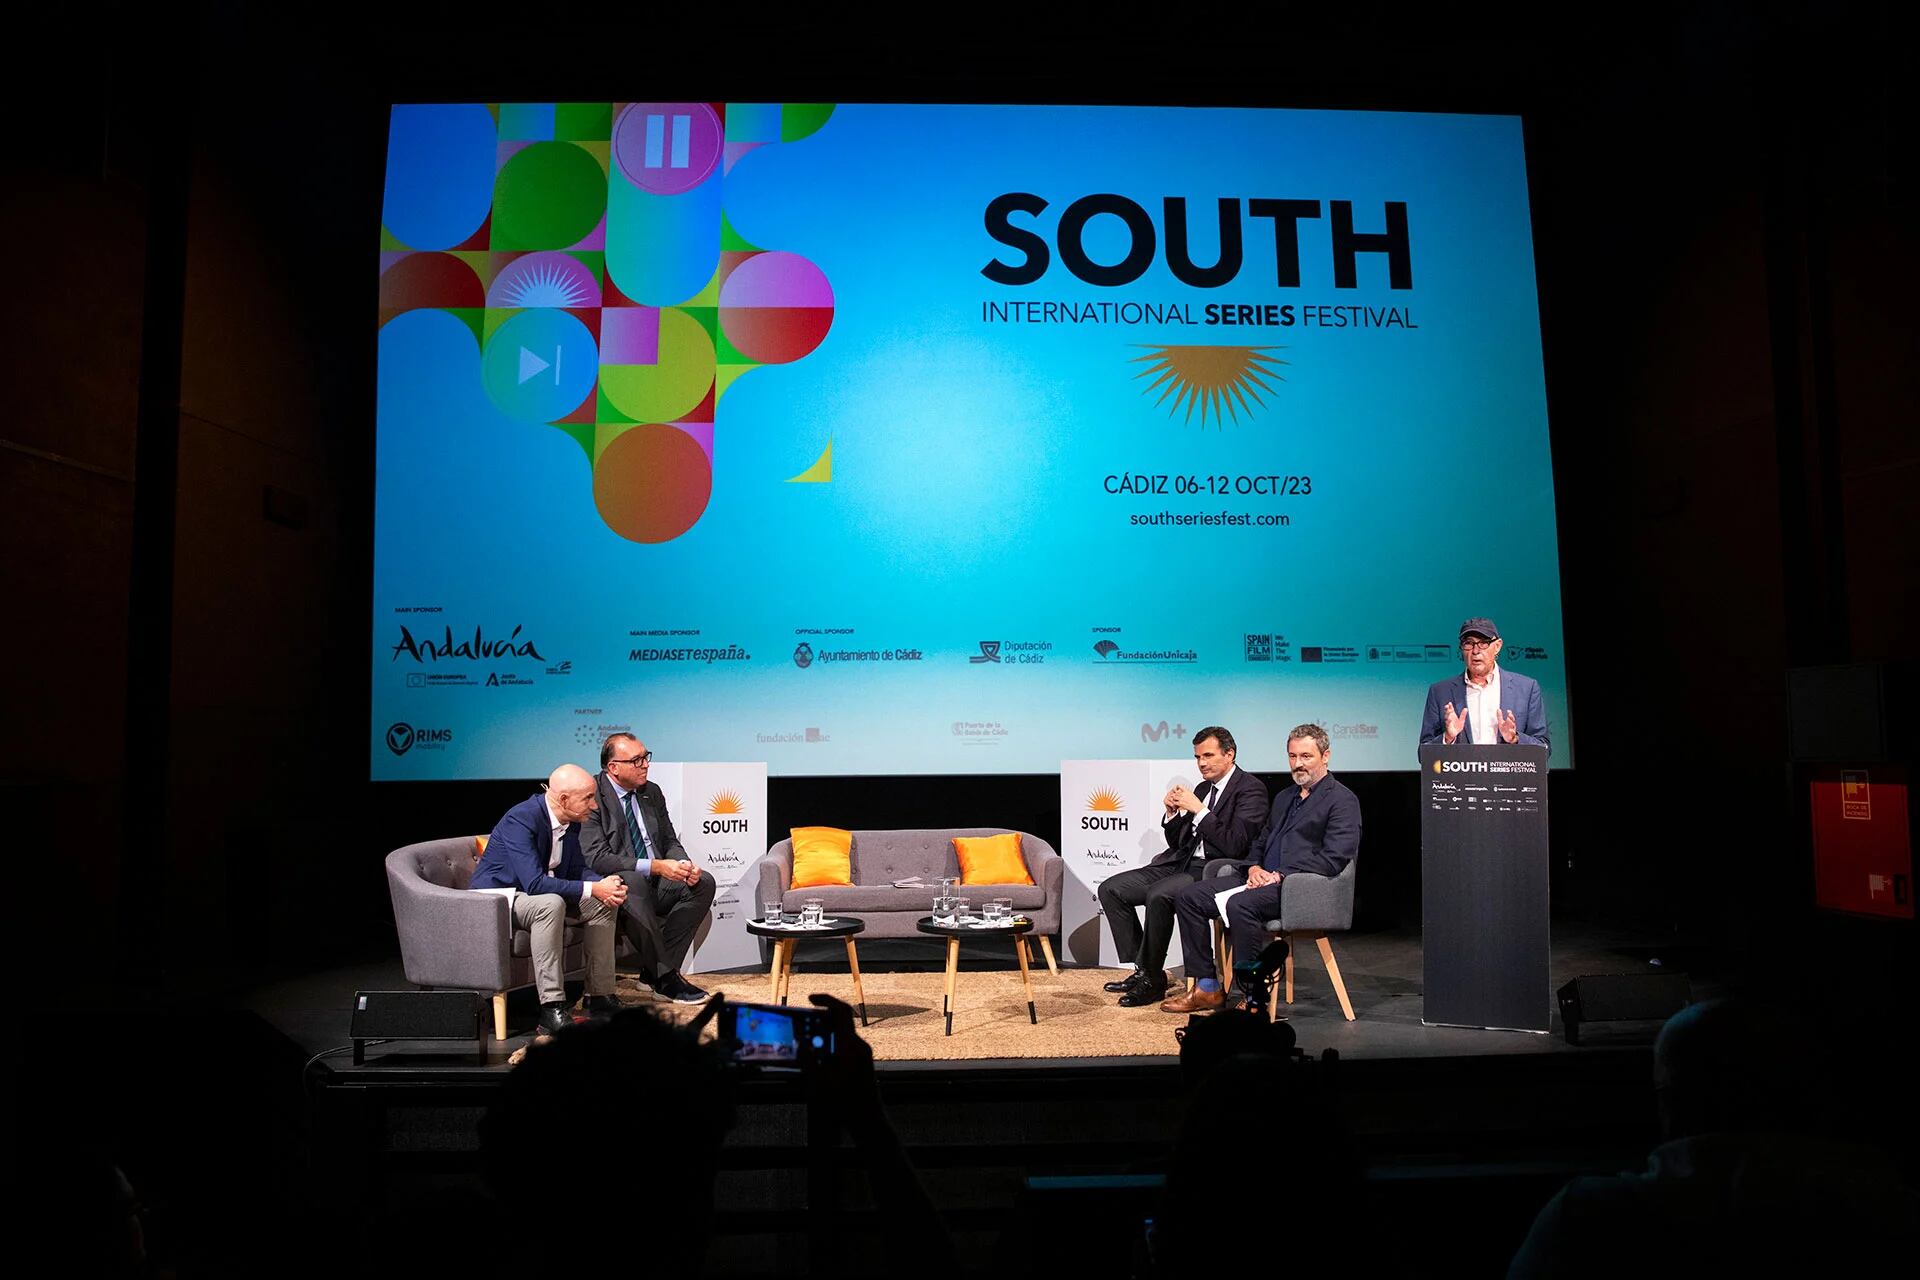 Se conoció la programación de la primera edición del South International Series Festival